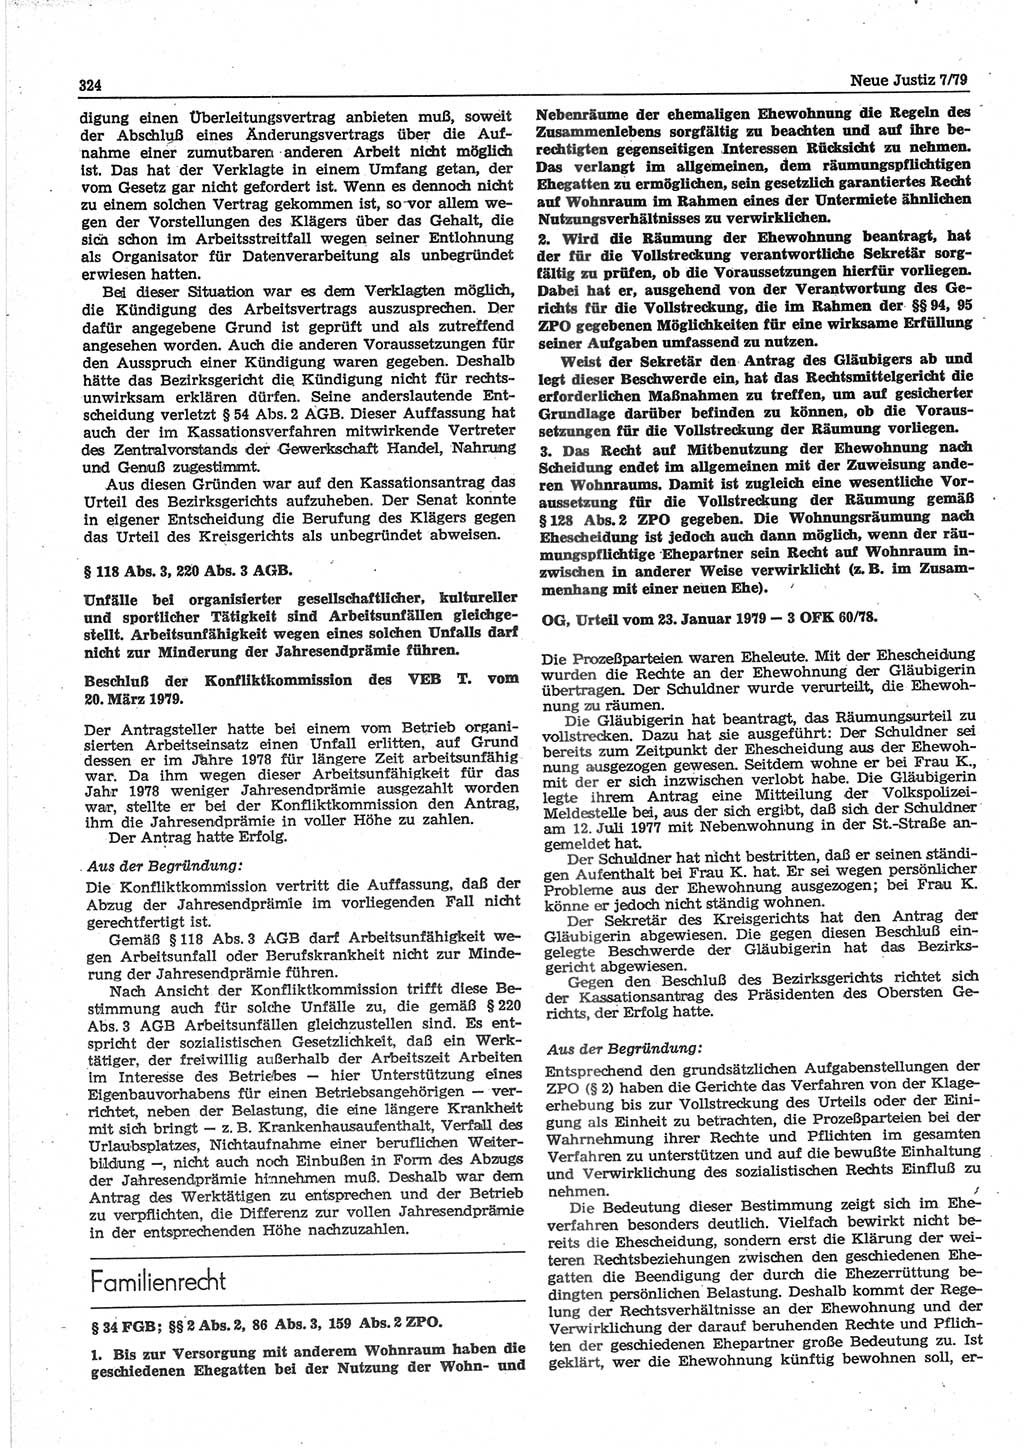 Neue Justiz (NJ), Zeitschrift für sozialistisches Recht und Gesetzlichkeit [Deutsche Demokratische Republik (DDR)], 33. Jahrgang 1979, Seite 324 (NJ DDR 1979, S. 324)